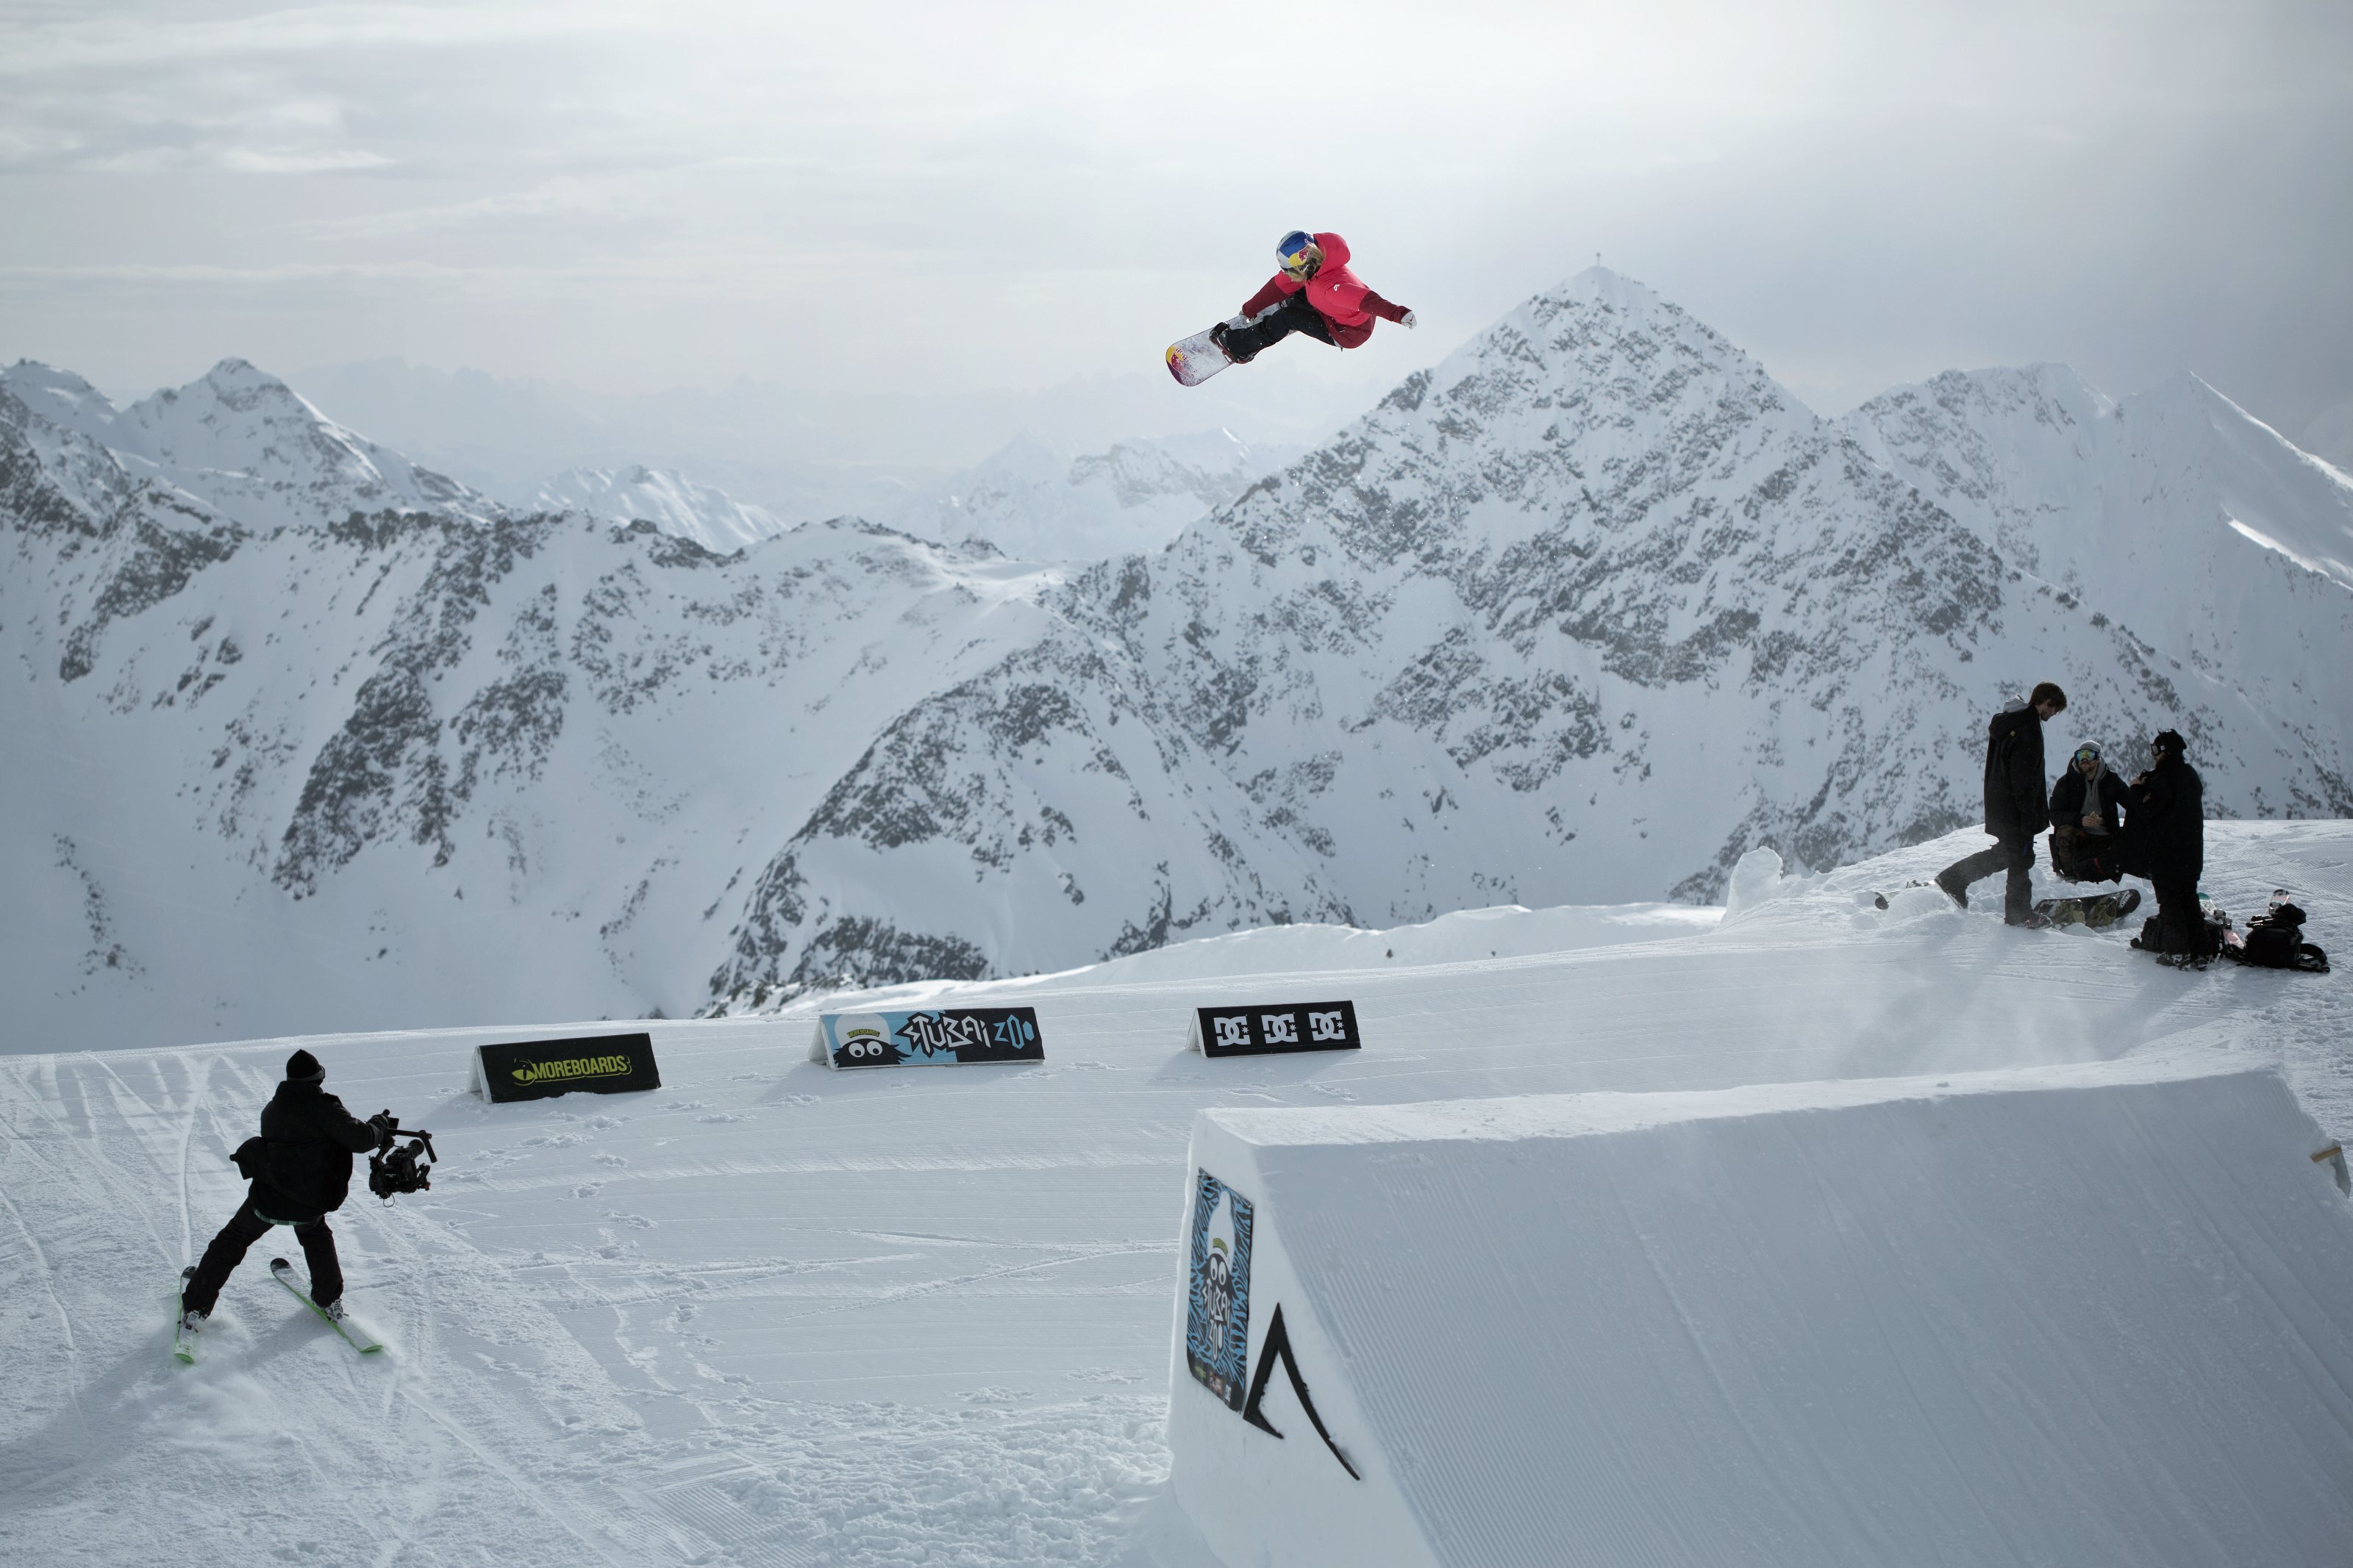 Anna Gasser, la slopestyle snowboarder, en vedette dans un bel edit de la part de Red Bull